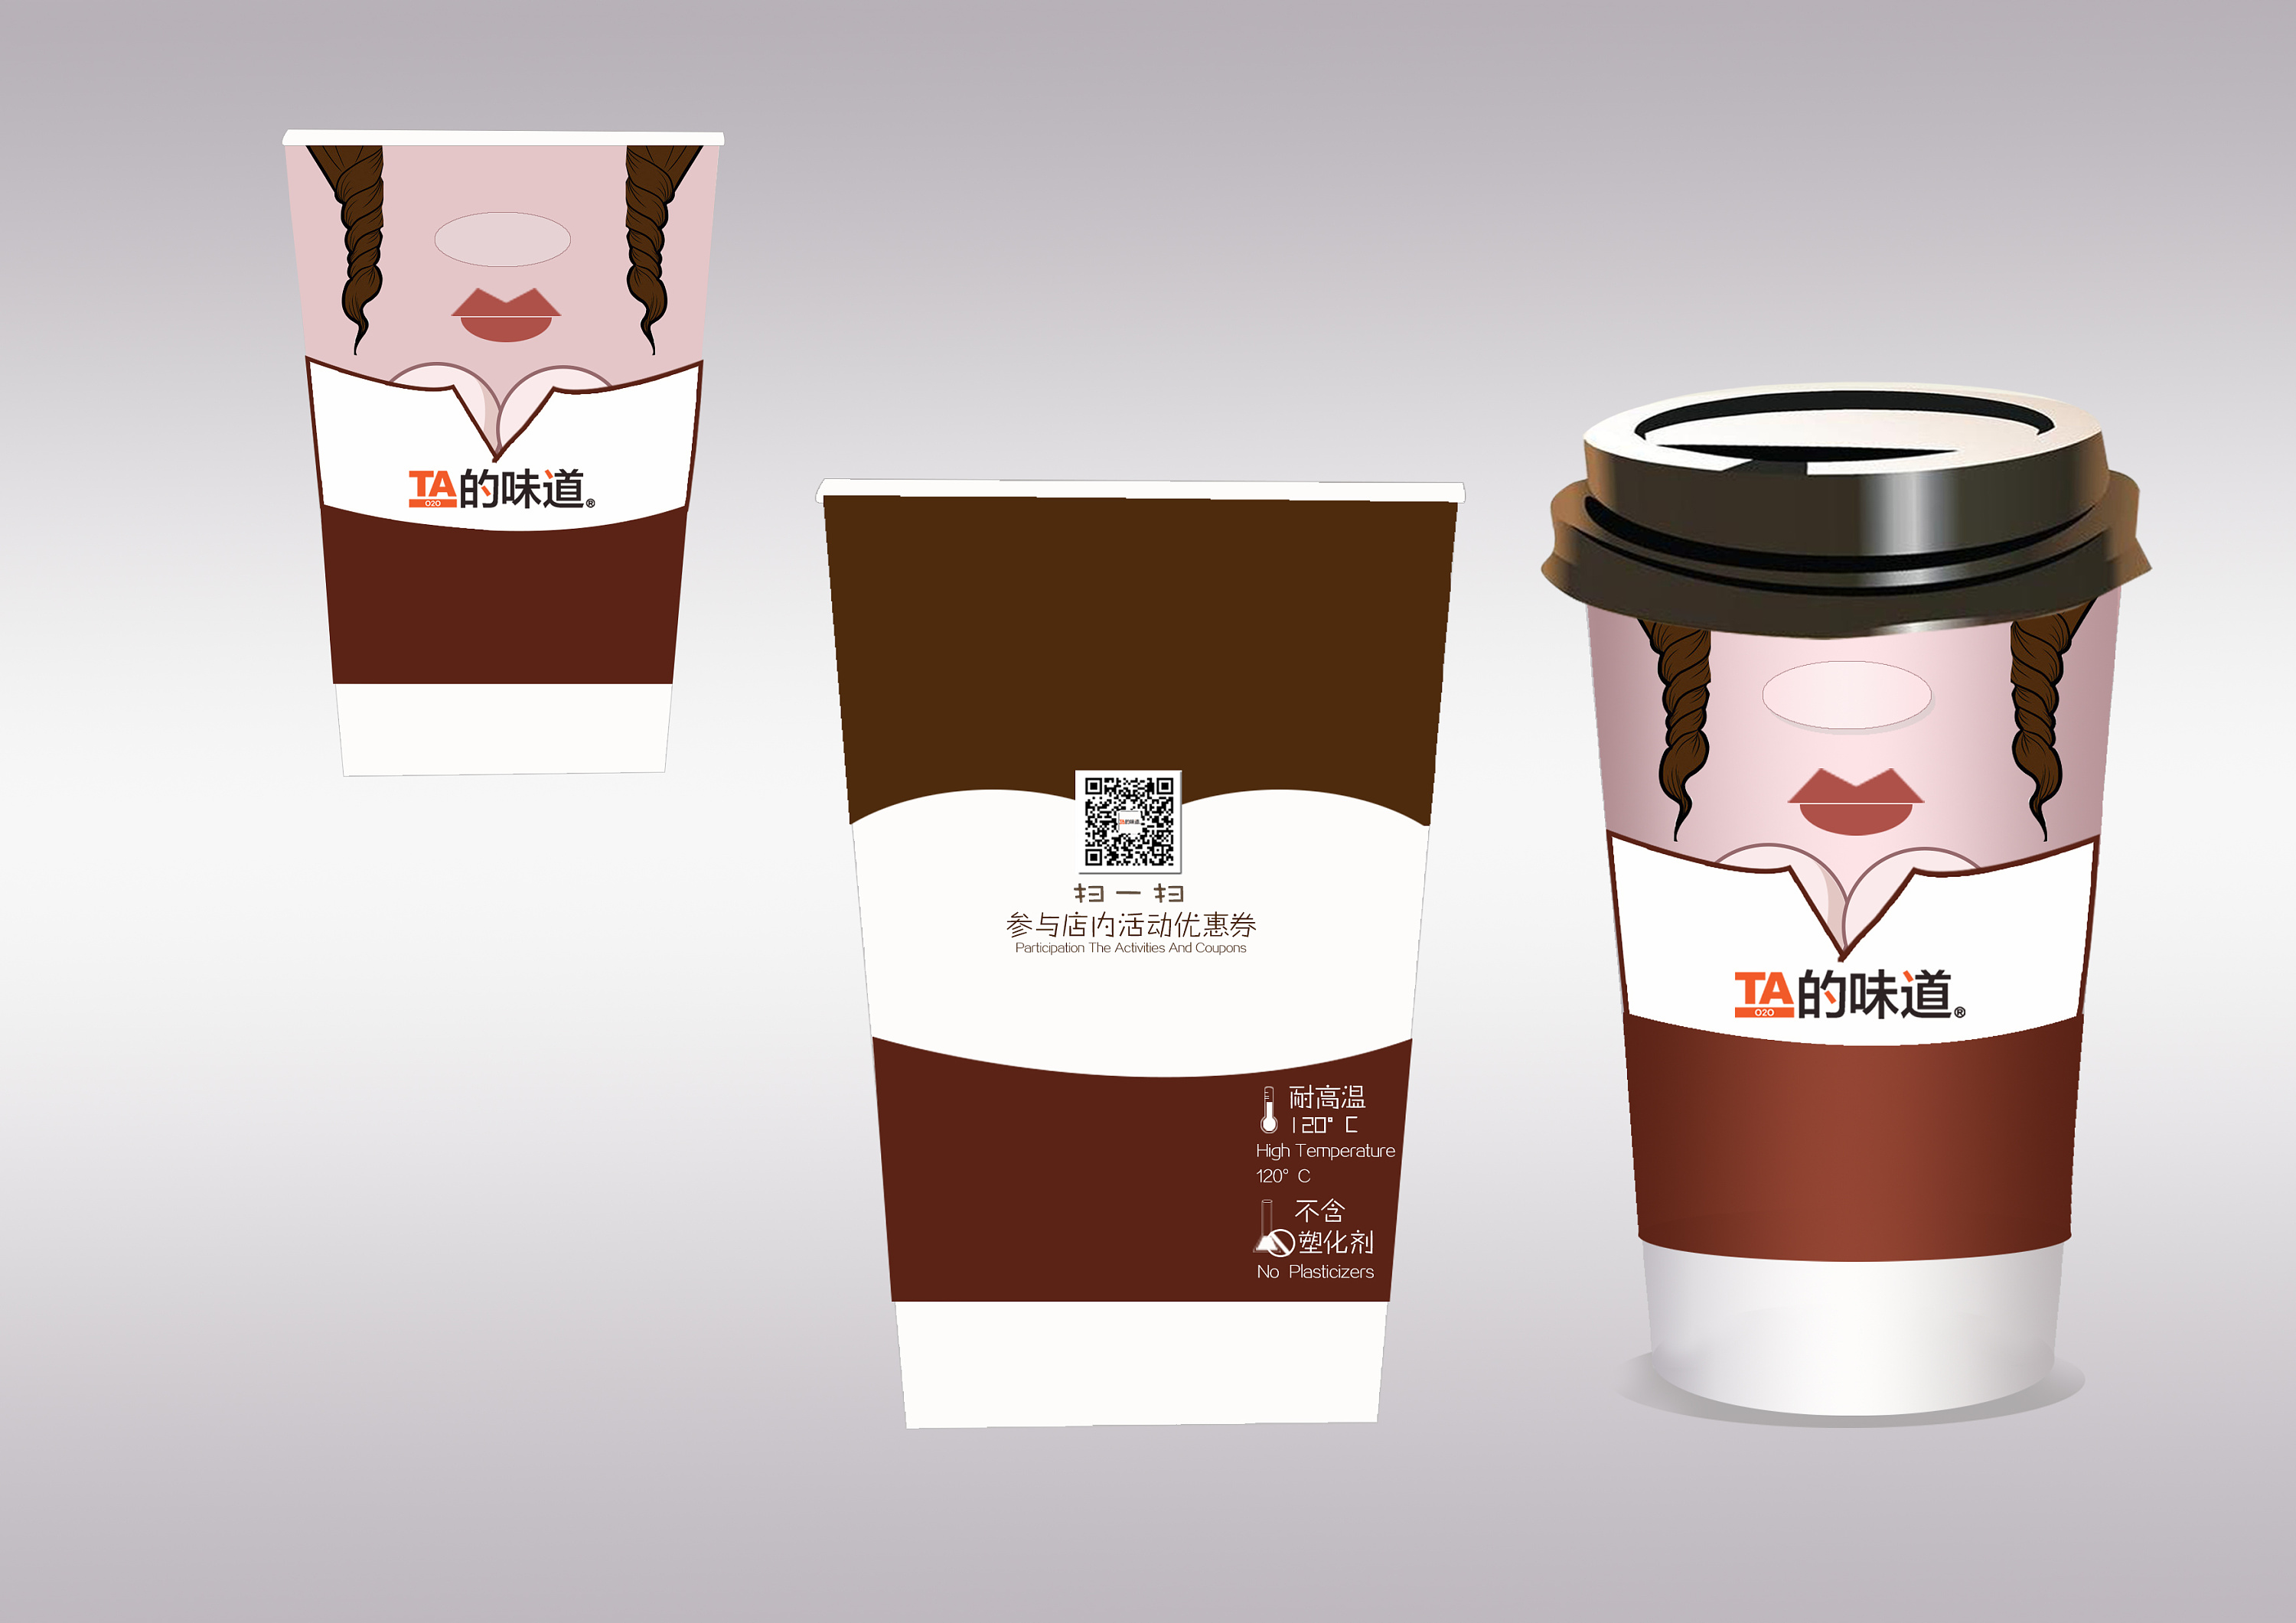 Kofea咖啡包装设计 - 设计之家